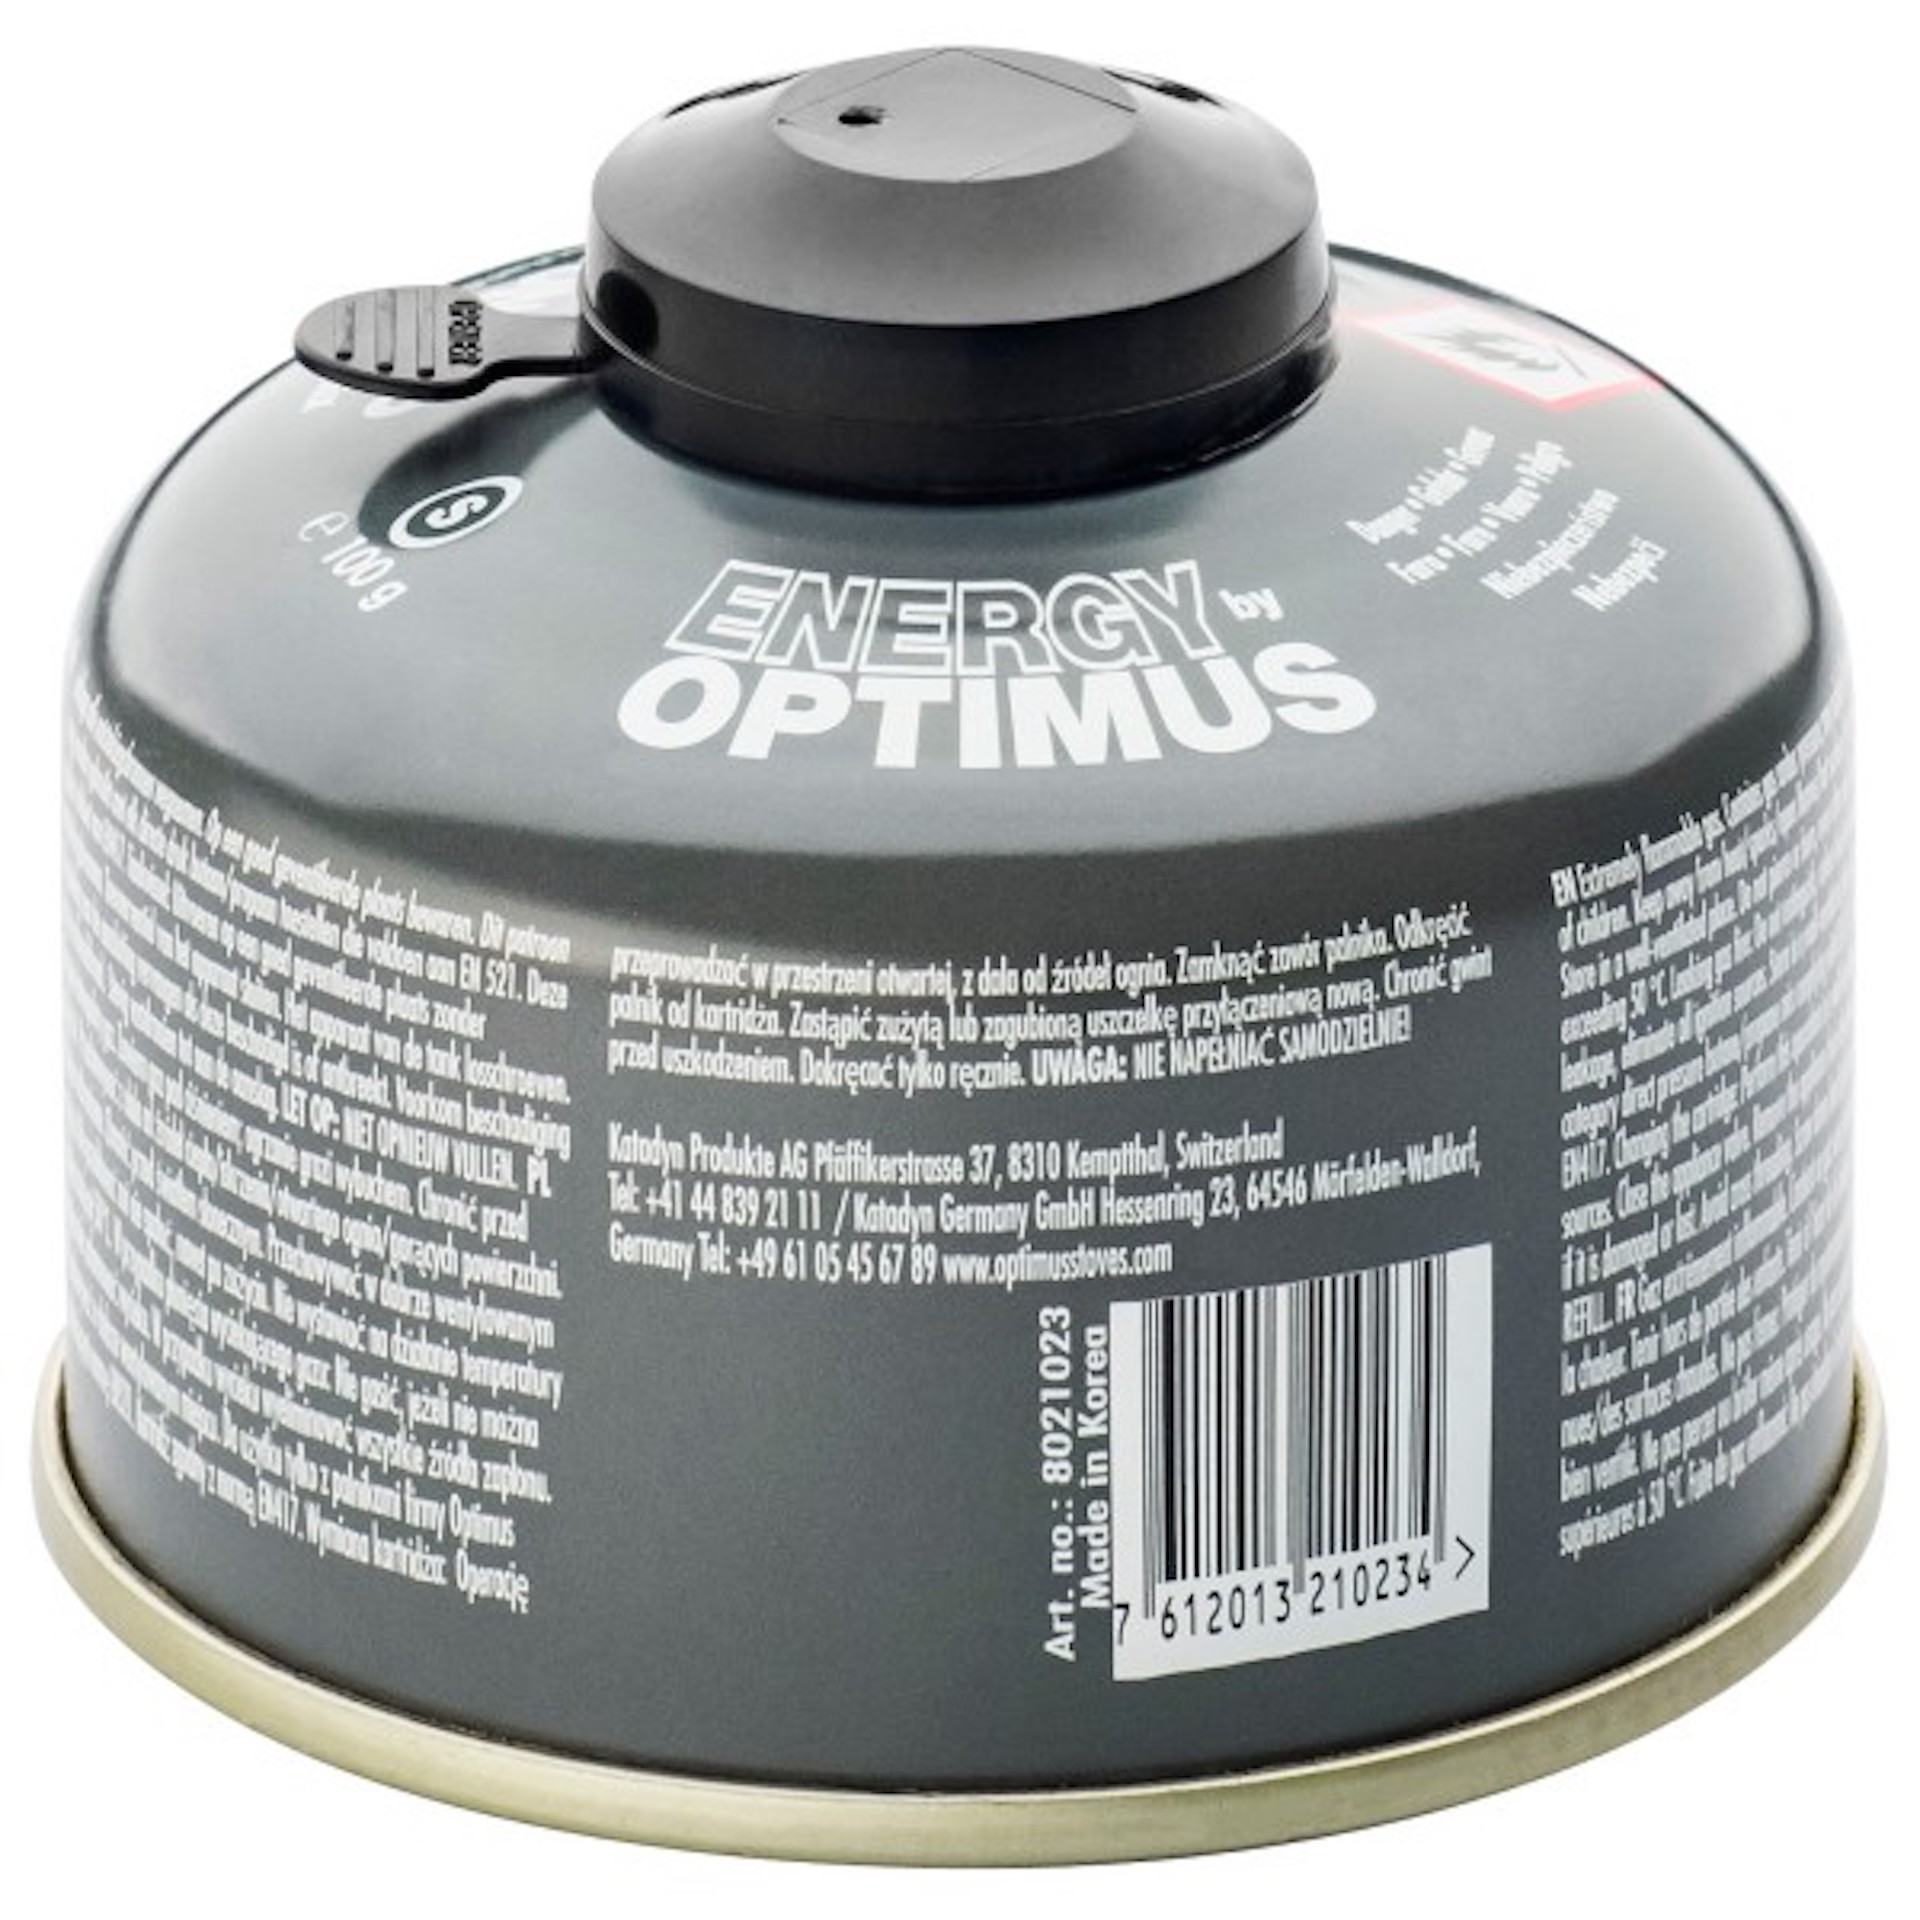 OPTIMUS Gaskartusche 4-Season 230 Gramm